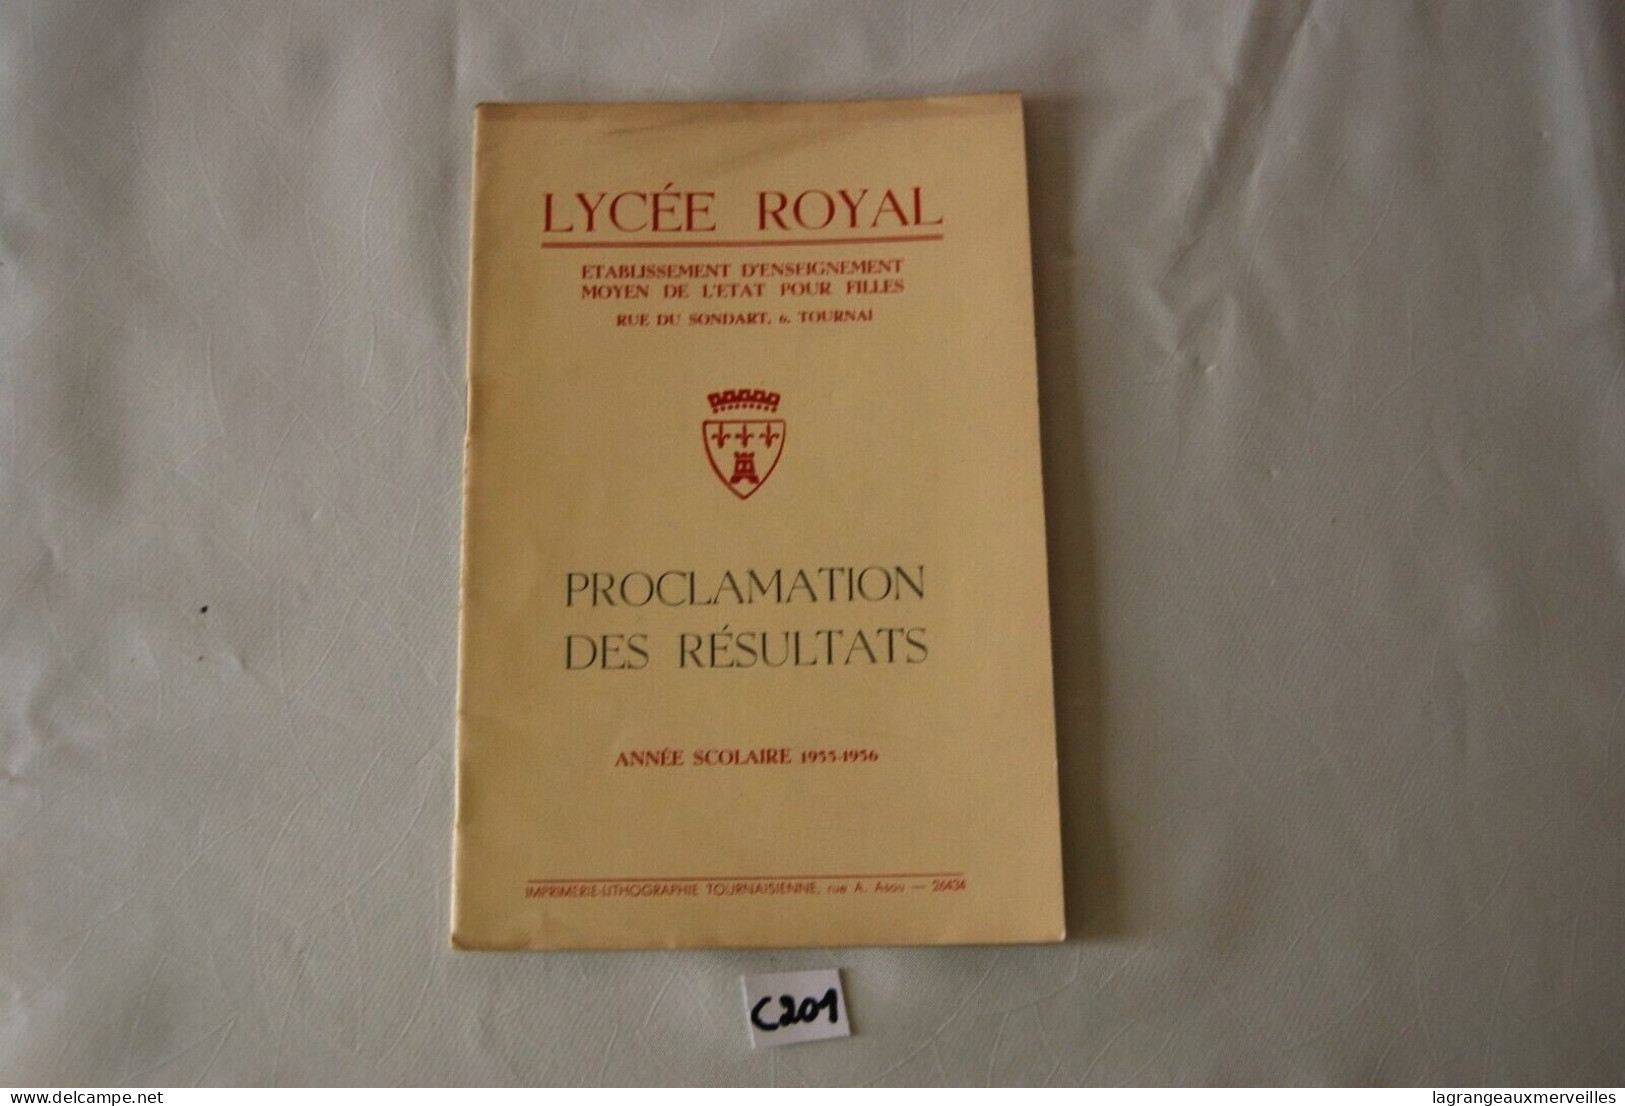 C201 Livret - Résultats 1955 56 - Ecole Tournai Lycée Royal - Diplomi E Pagelle